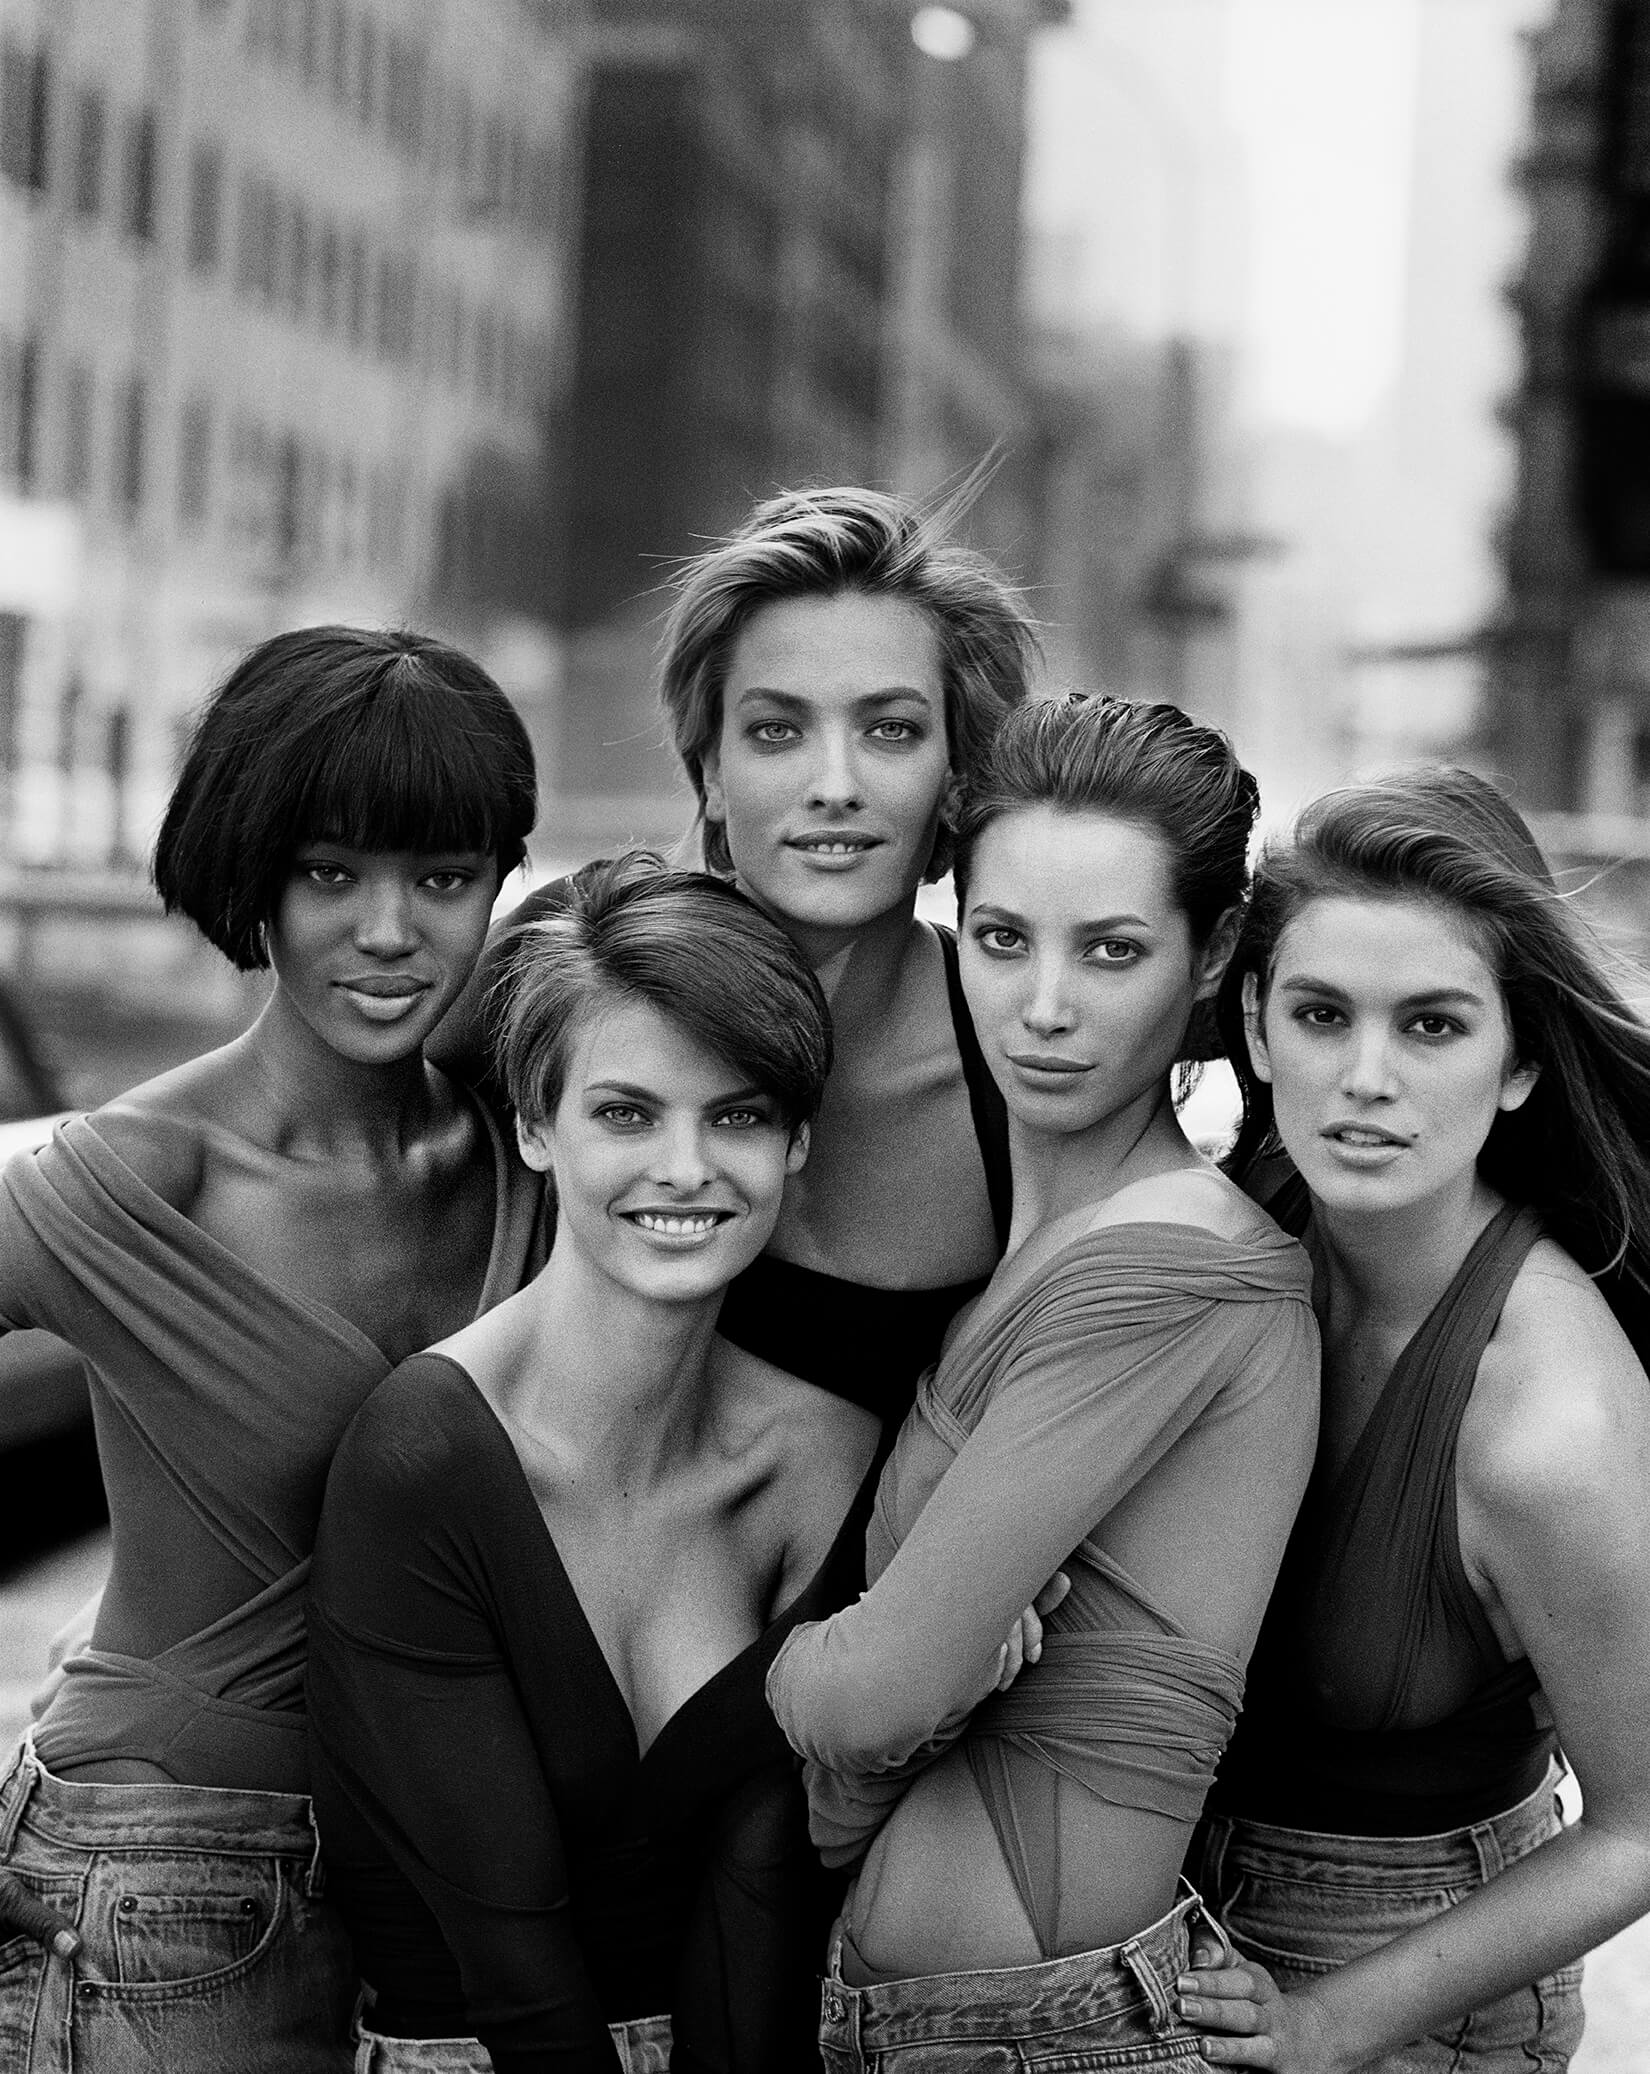 Το 1989, η βρετανική Vogue, αναθέτει στον φωτογράφο να παρουσιάσει το όραμα του για την νέα δεκαετία. Ο Λίντμπεργκ τότε συγκεντρώνει πέντε ανερχόμενα μοντέλα, μεταξύ τους οι Ναόμι Κάμπελ, Σίντι Κρόφορντ και Λίντα Εβαντζελίστα. Photo Credits: Peter Lindbergh